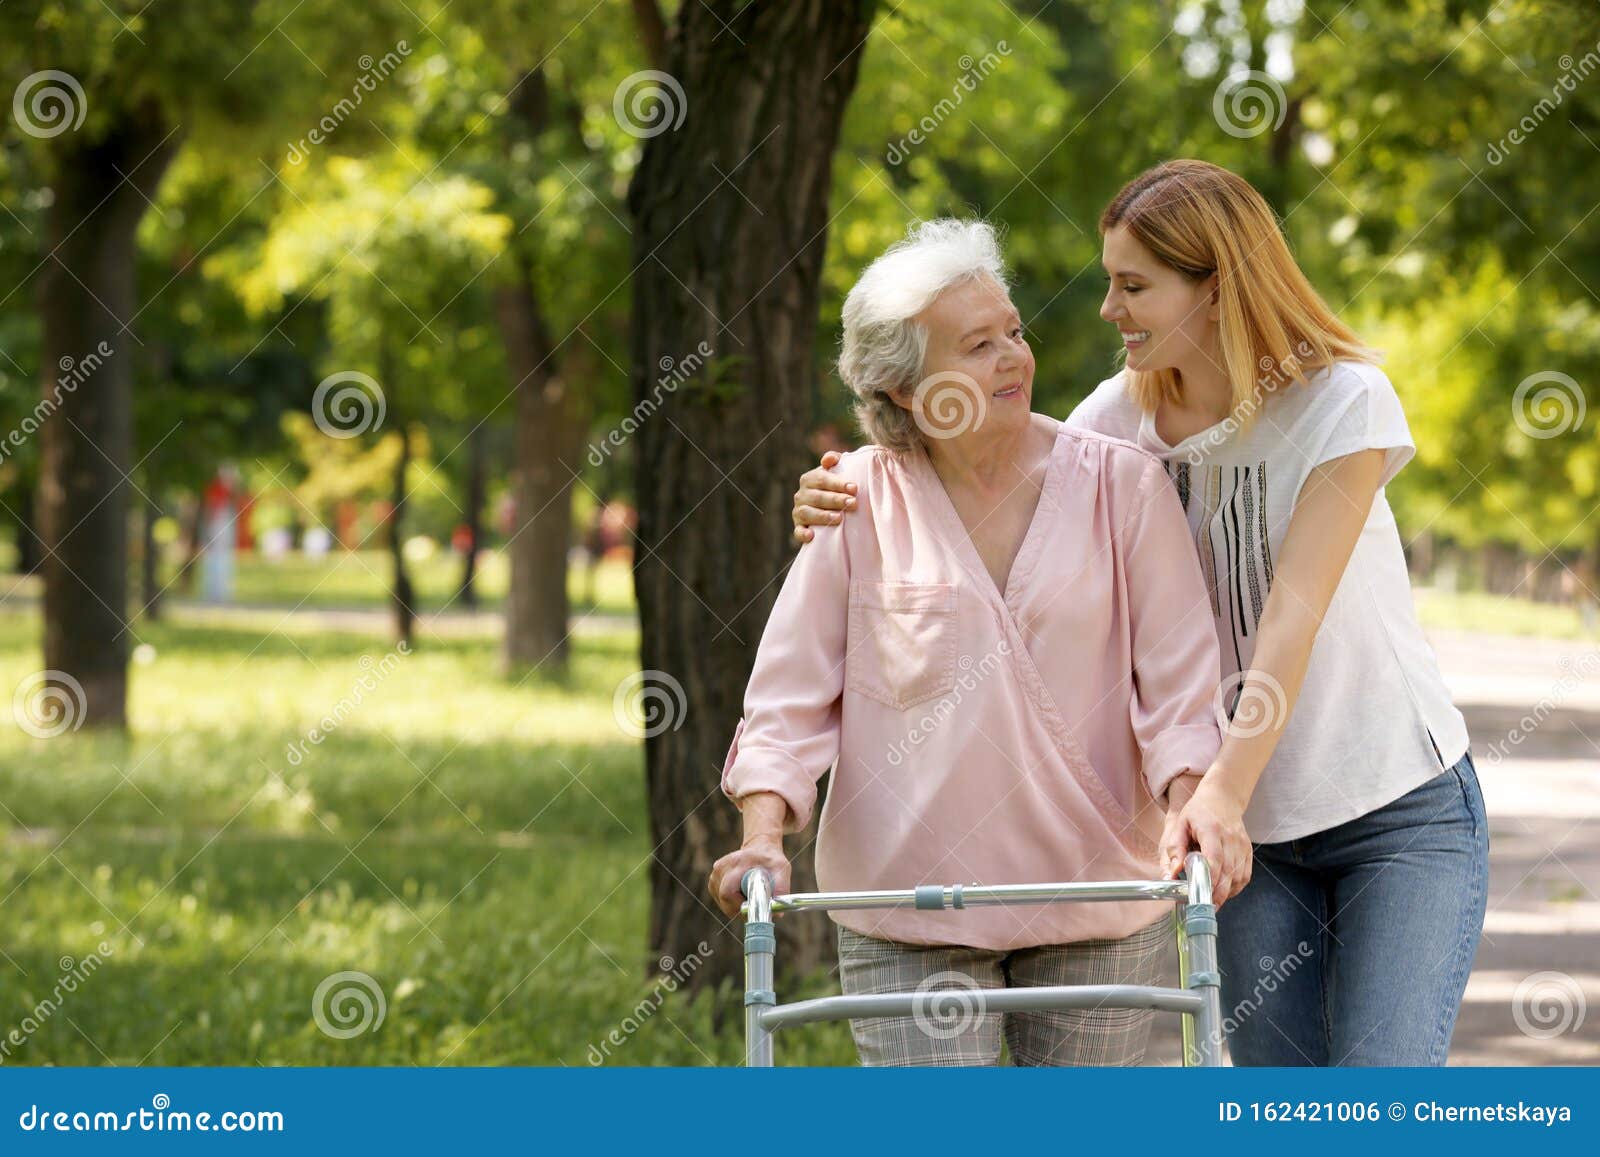 caretaker helping elderly woman with walking frame